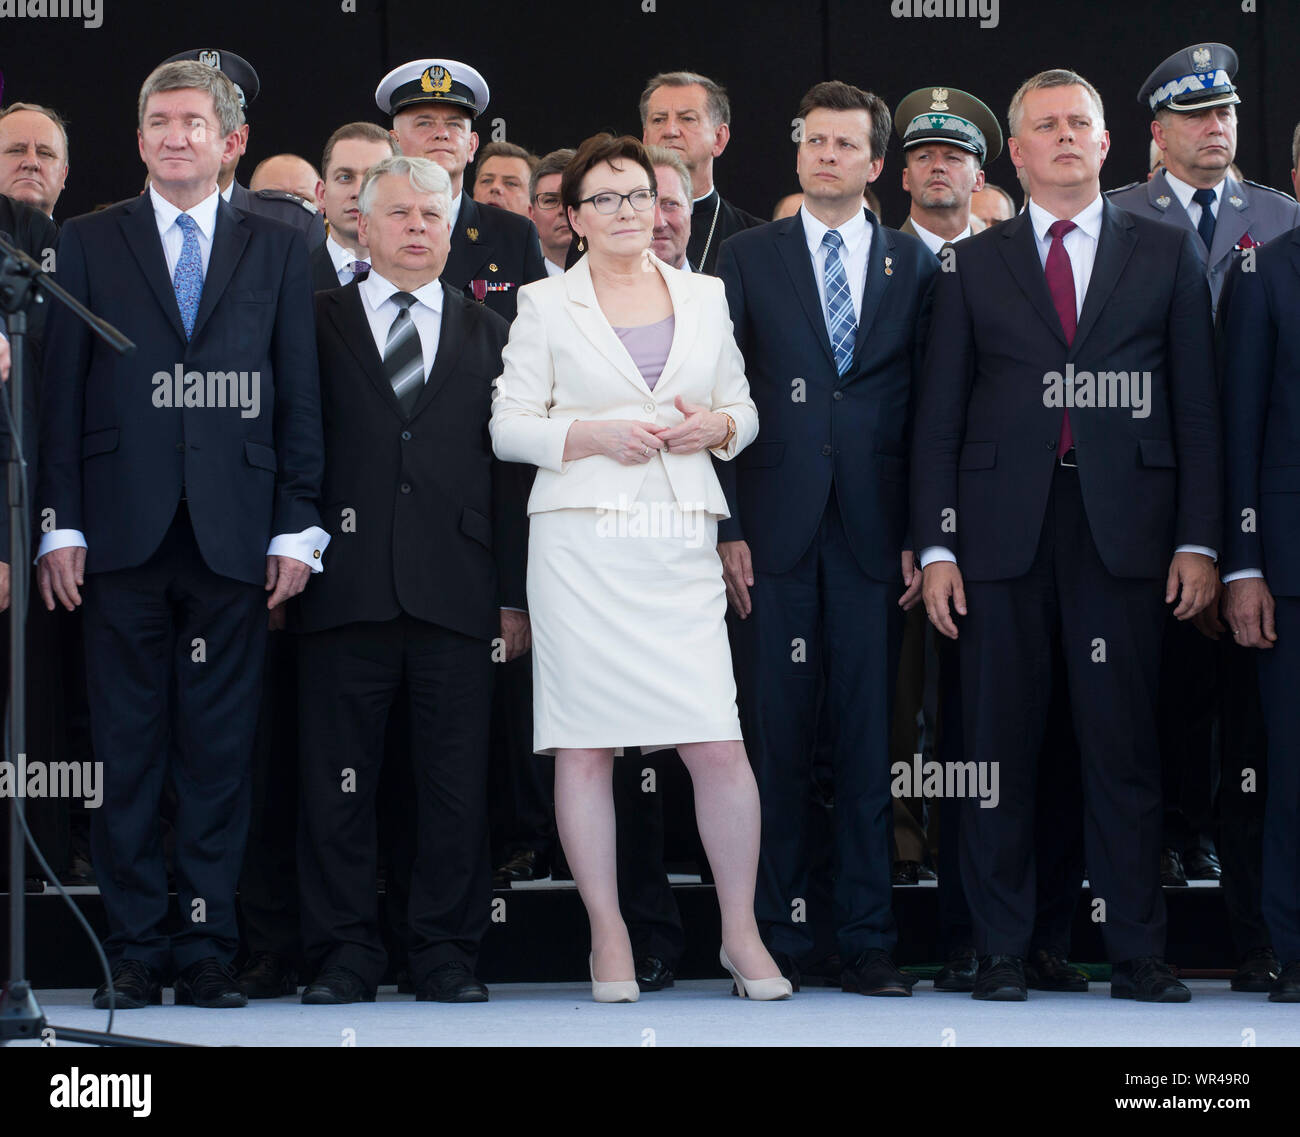 Il 6 agosto 2015 Varsavia, inaugurazione presidenziale in Polonia: Andrzej Duda prestato giuramento come nuovo presidente polacco. Cerimonia presso il maresciallo Jozef Pi³sudski Squar Foto Stock